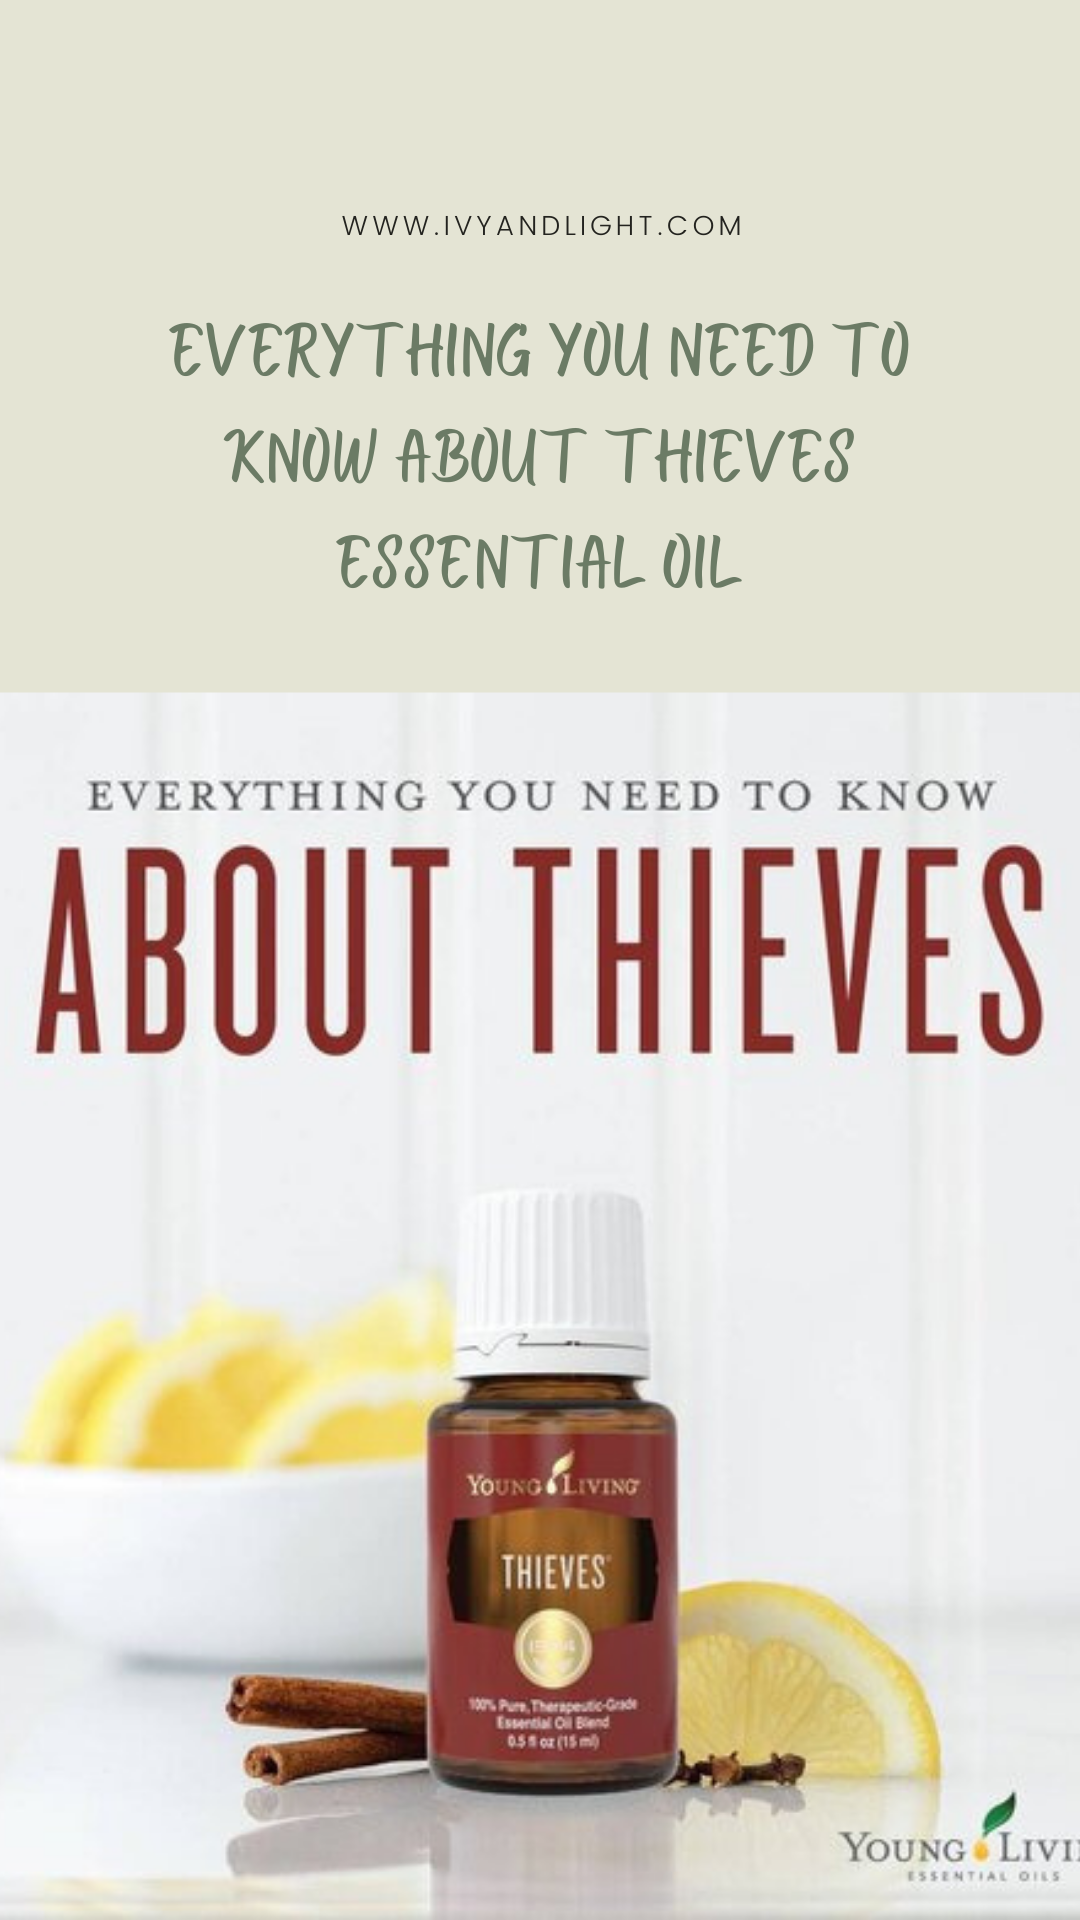 Thieves® Essential Oil Blend